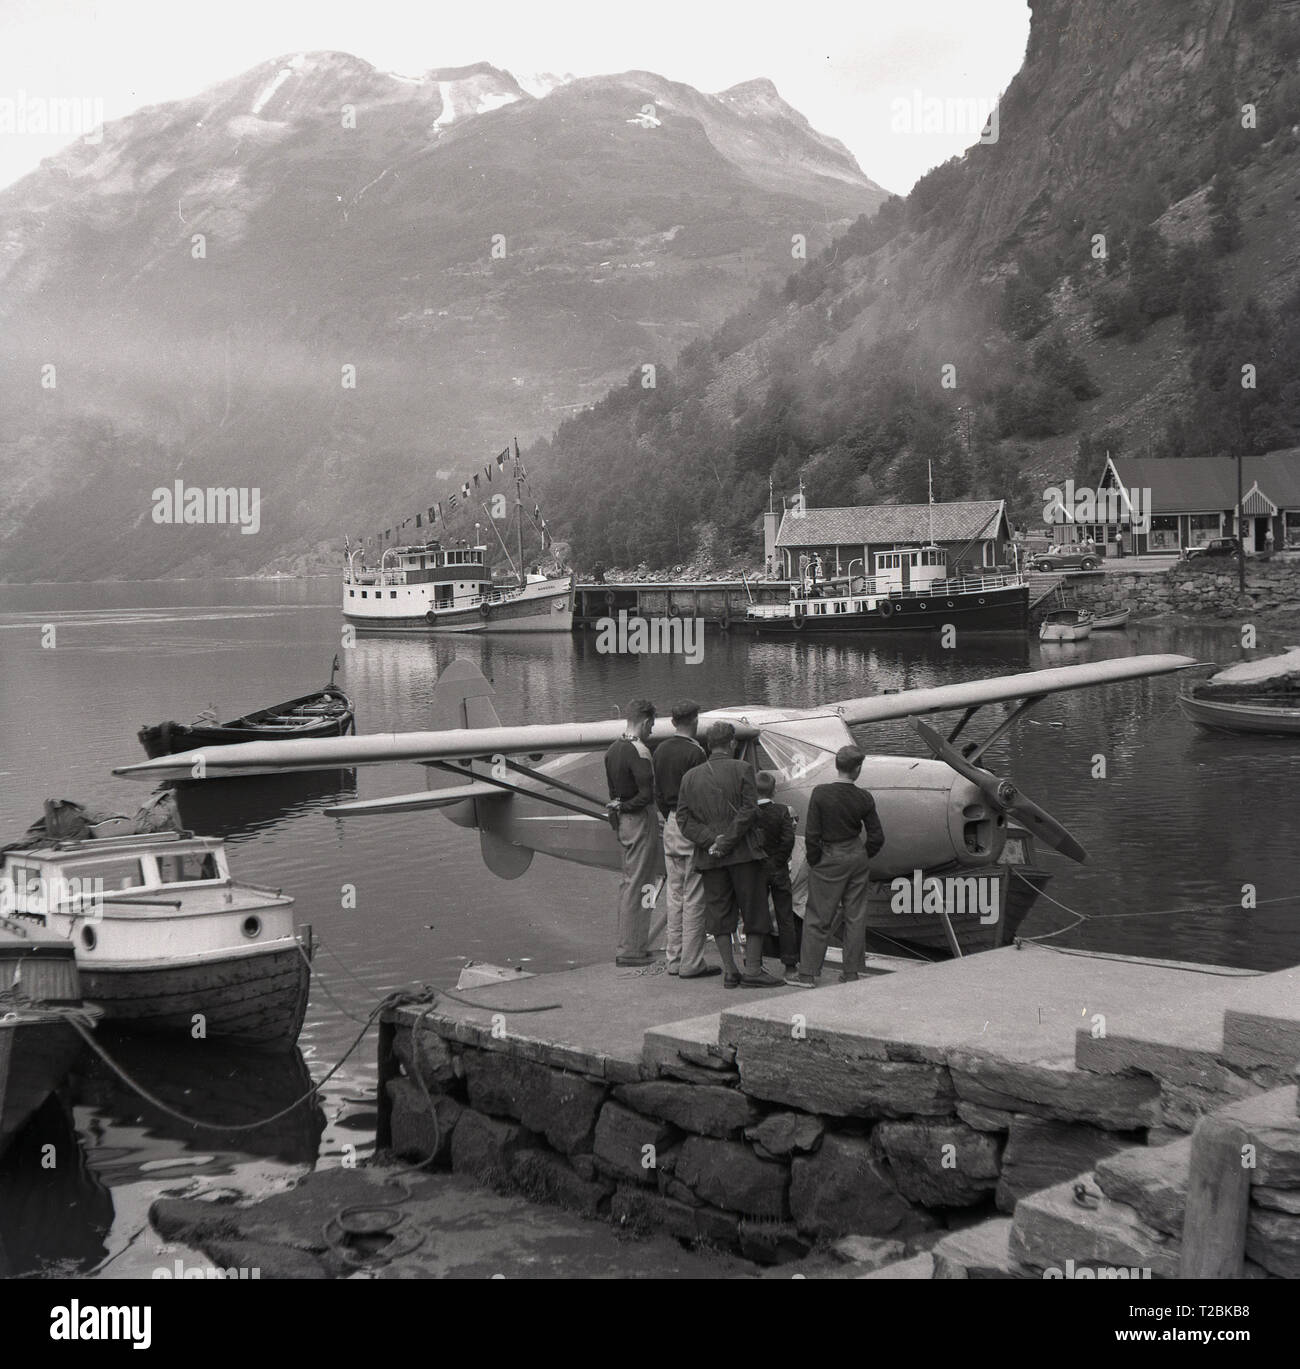 1950, historische, Männer und Jungen an einer Norwegischen an einem Fjord an eine kleine Feste - Flügel mit dem Wasserflugzeug angetrieben oder "wasserflugzeug" durch Schritte im Hafen in der Nähe von Narvik, Norwegen günstig Suchen suchen. Stockfoto